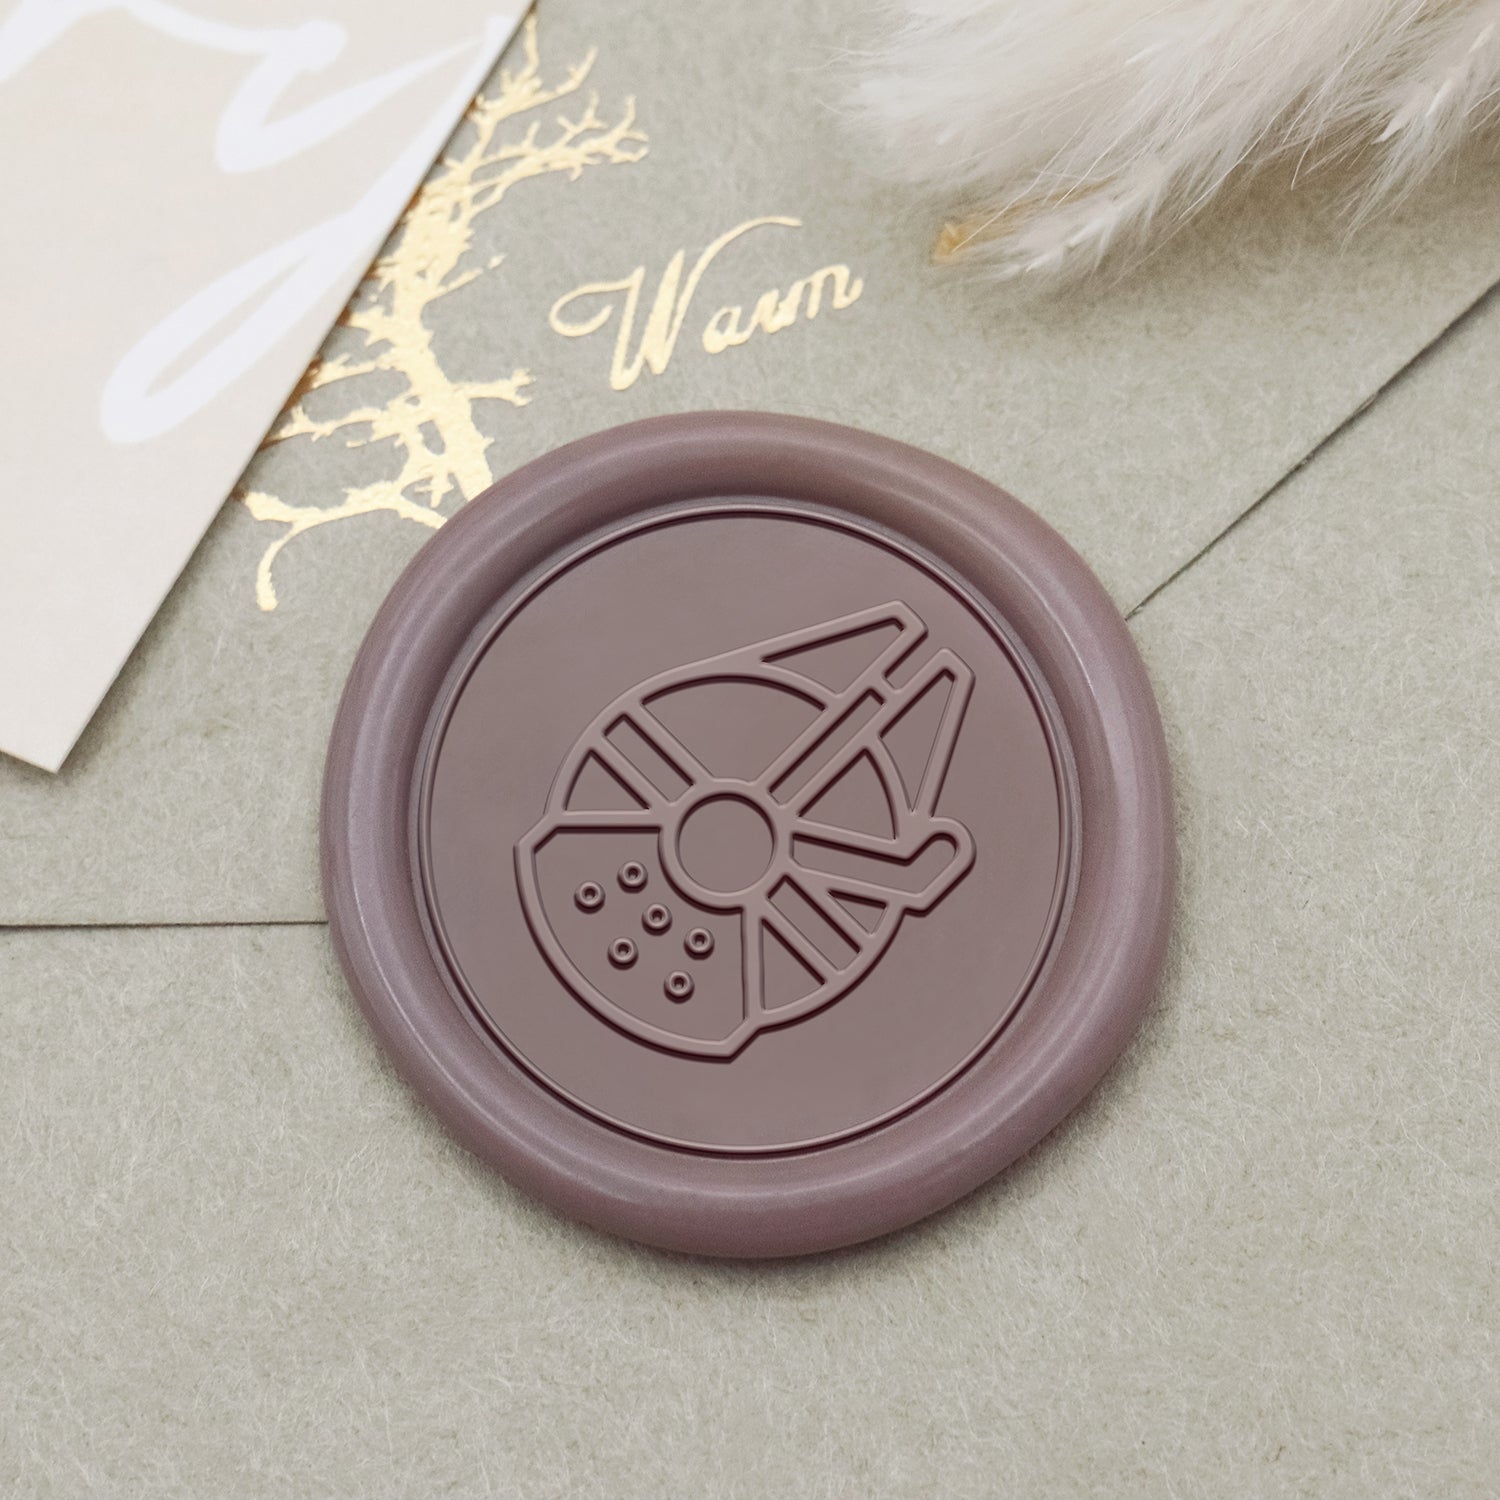 Stamprints Millennium Falcon Design Wax Seal Stamp 1